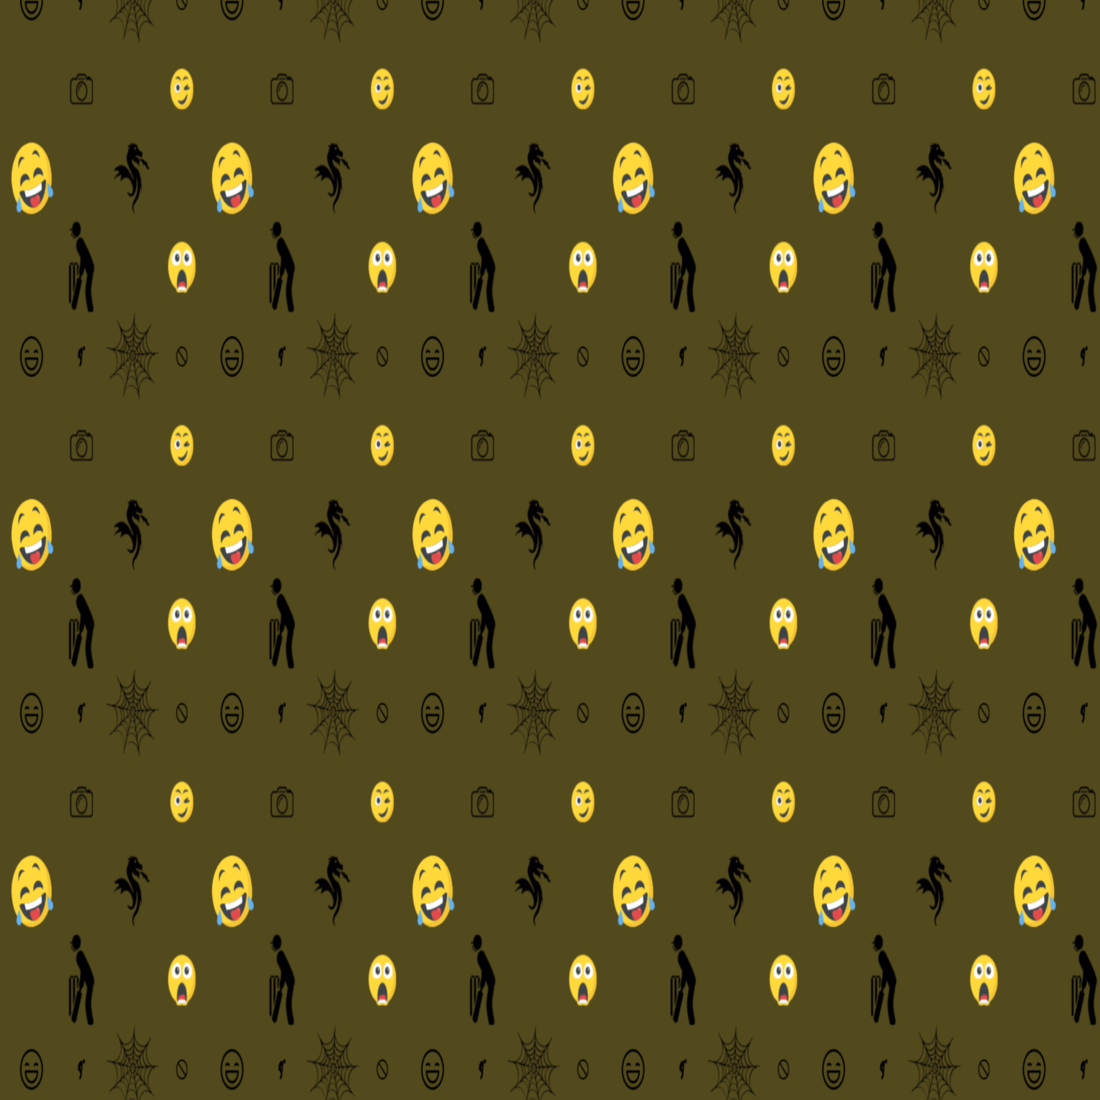 Amazing 8 Emoji Patterns dark green background.